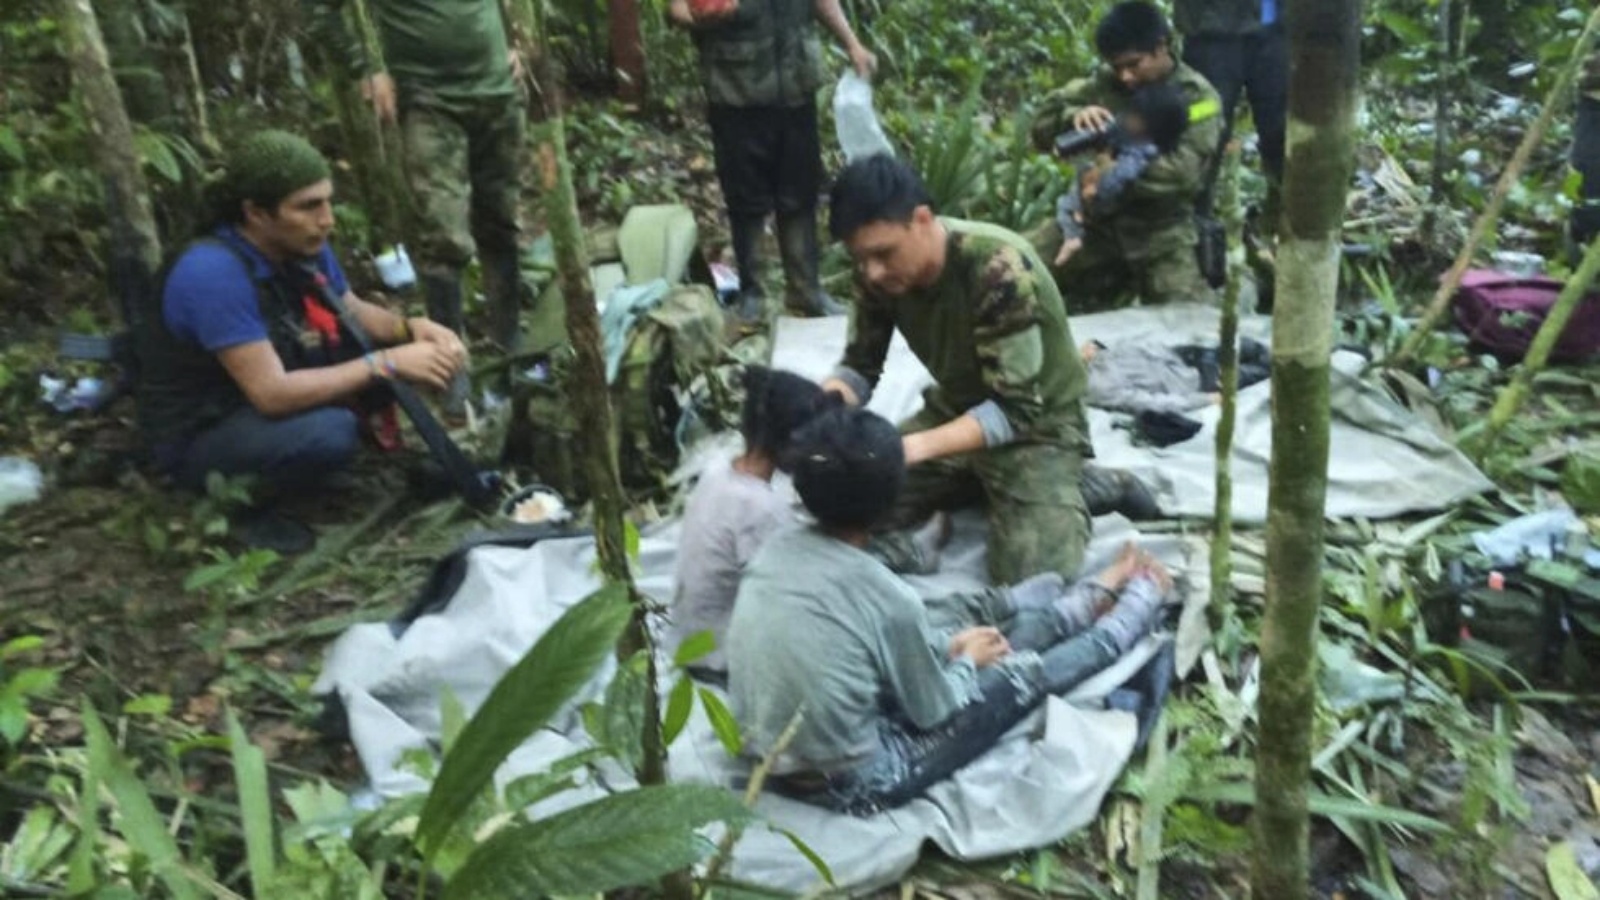 جنود كولومبيون يعتنون بأربعة أطفال من السكان الأصليين تم العثور عليهم أحياء بعد أن قضوا أكثر من شهر في غابة الأمازون بعد تحطم طائرة صغيرة